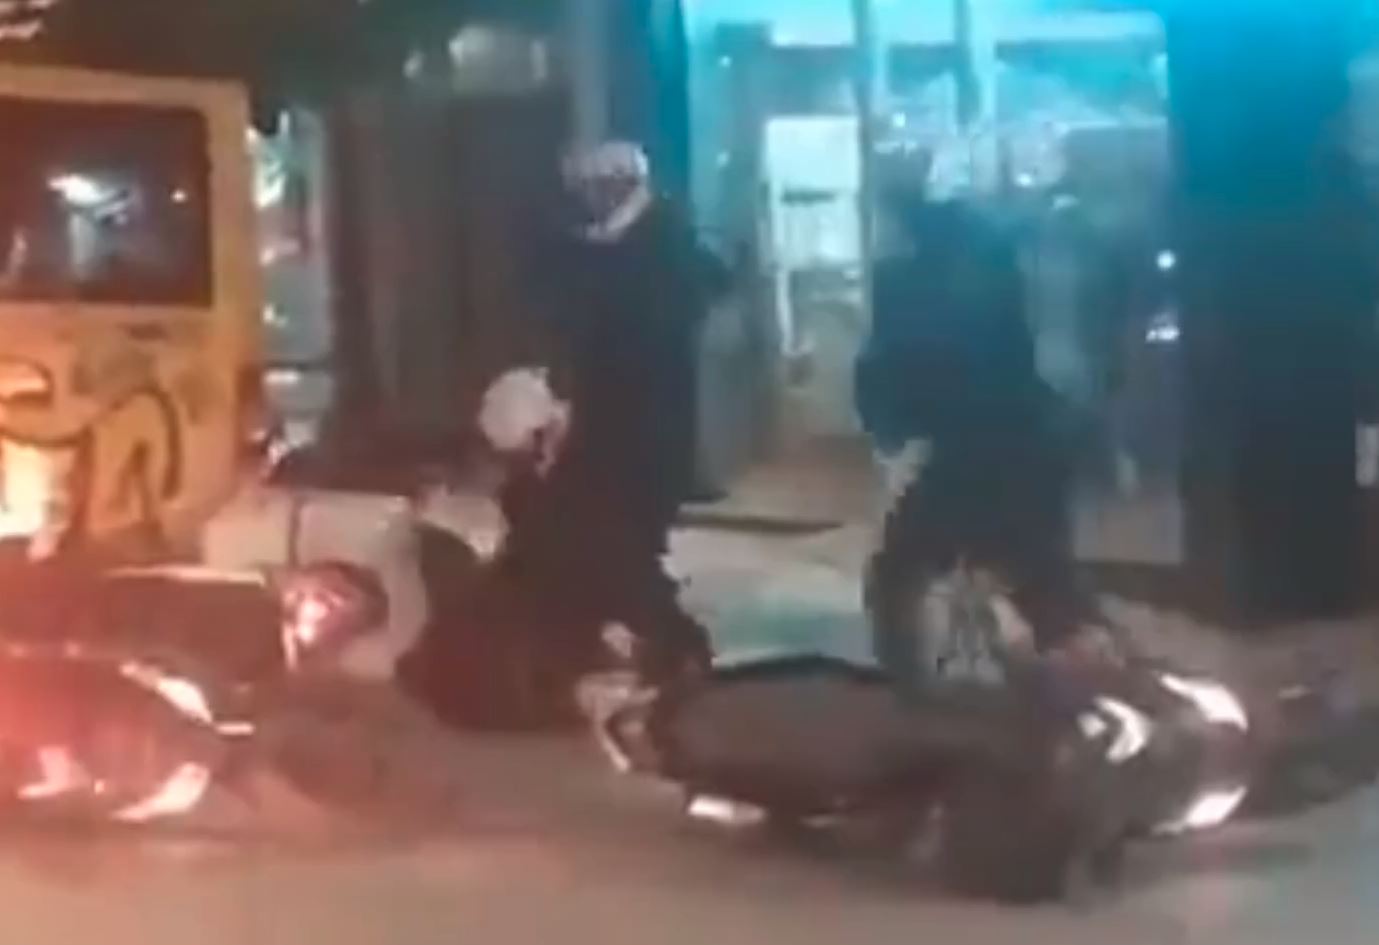 Βίαιος ξυλοδαρμός διαδηλωτή από αστυνομικούς στην πλατεία Βικτωρίας - Διατάχθηκε ΕΔΕ